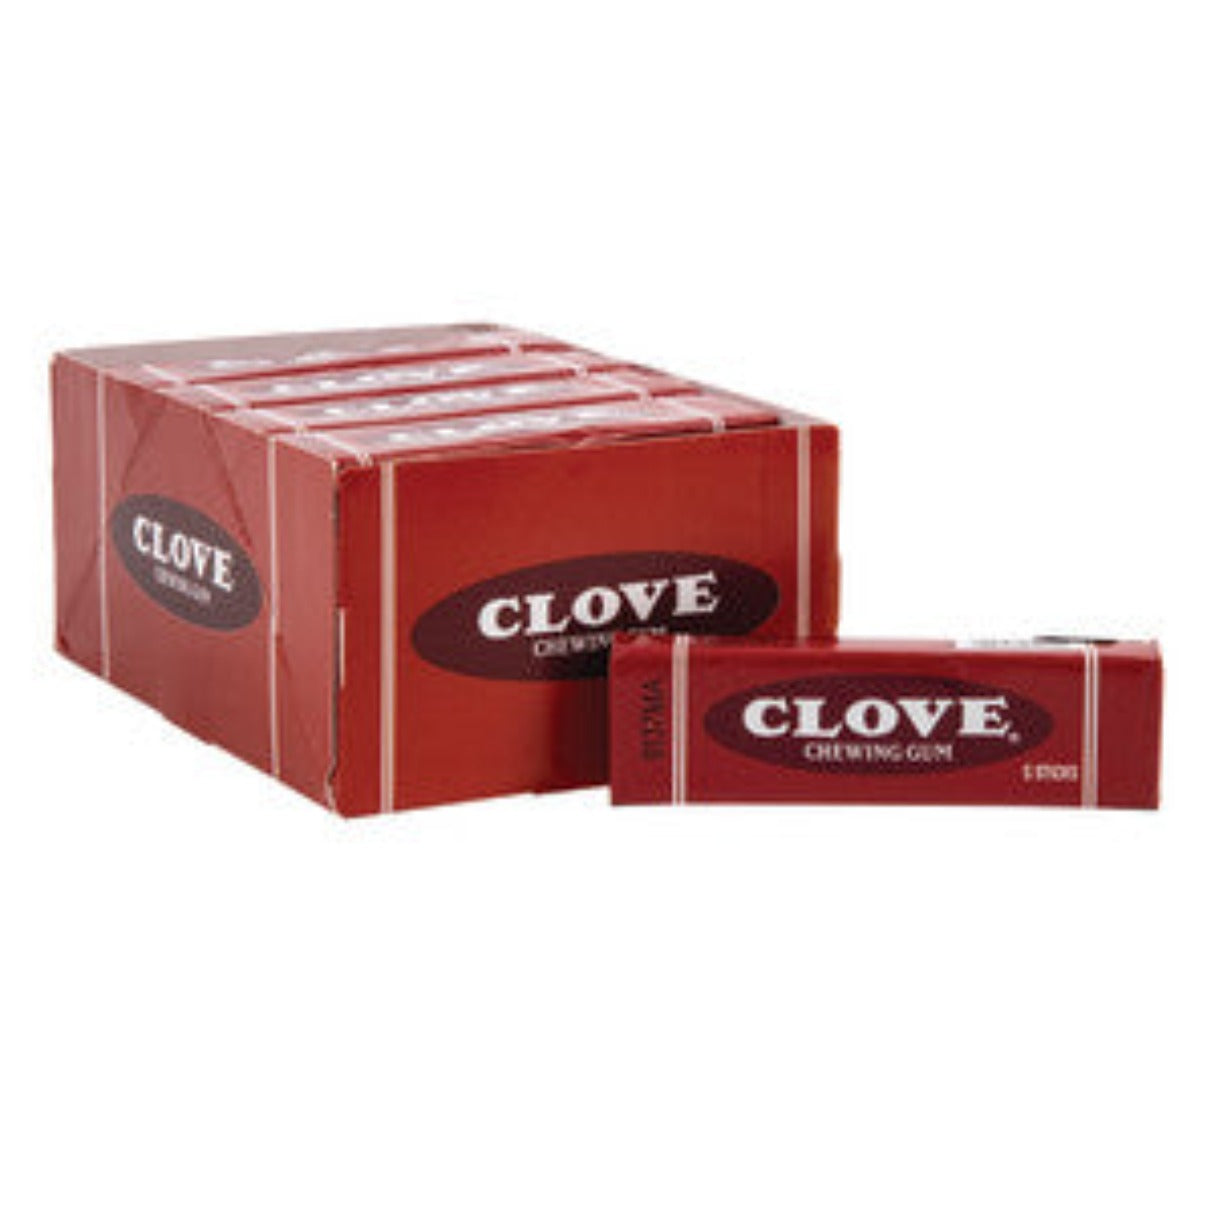 Clove Gum Box - 20ct